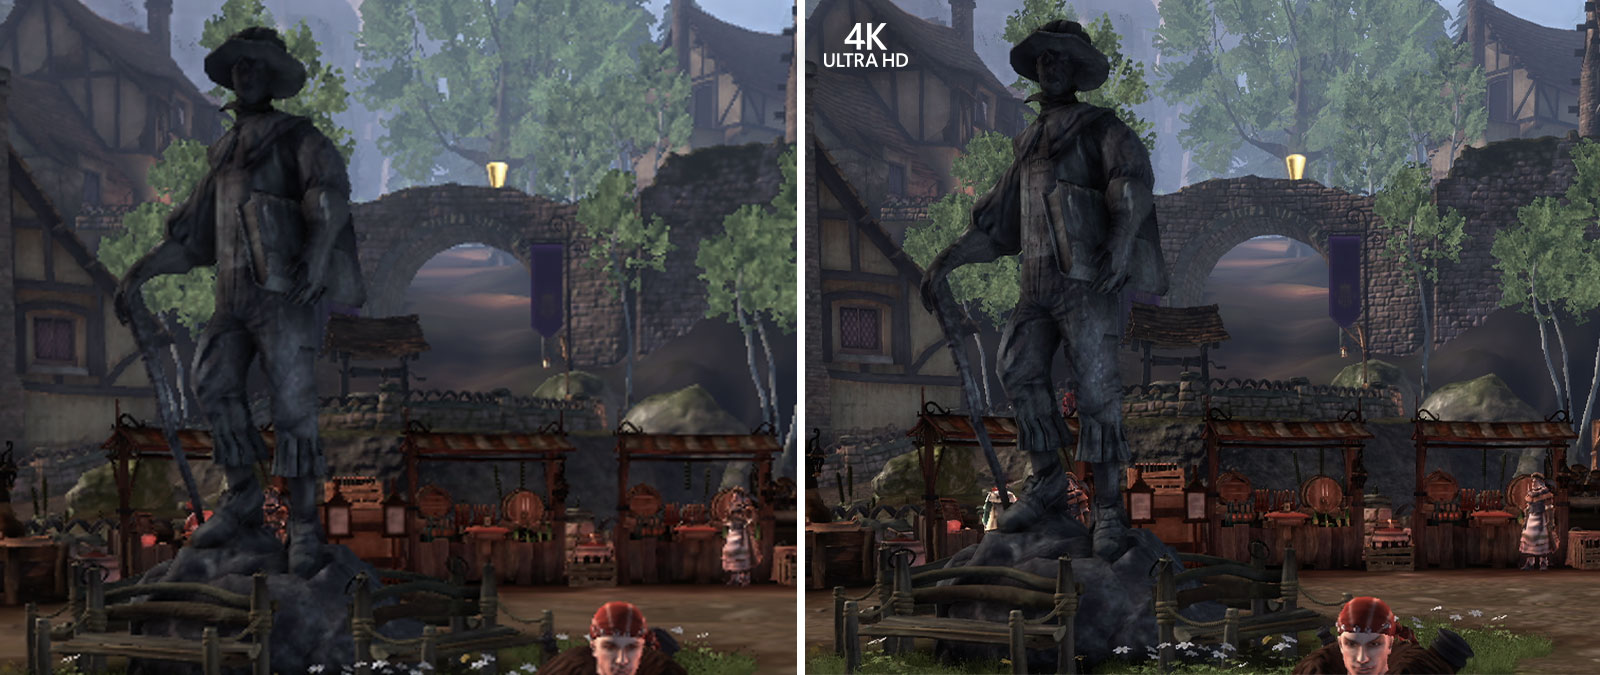 4K Ultra HD, Comparación de capturas de pantalla de Fable Anniversary de la imagen aumentada para mostrar los detalles en el fondo